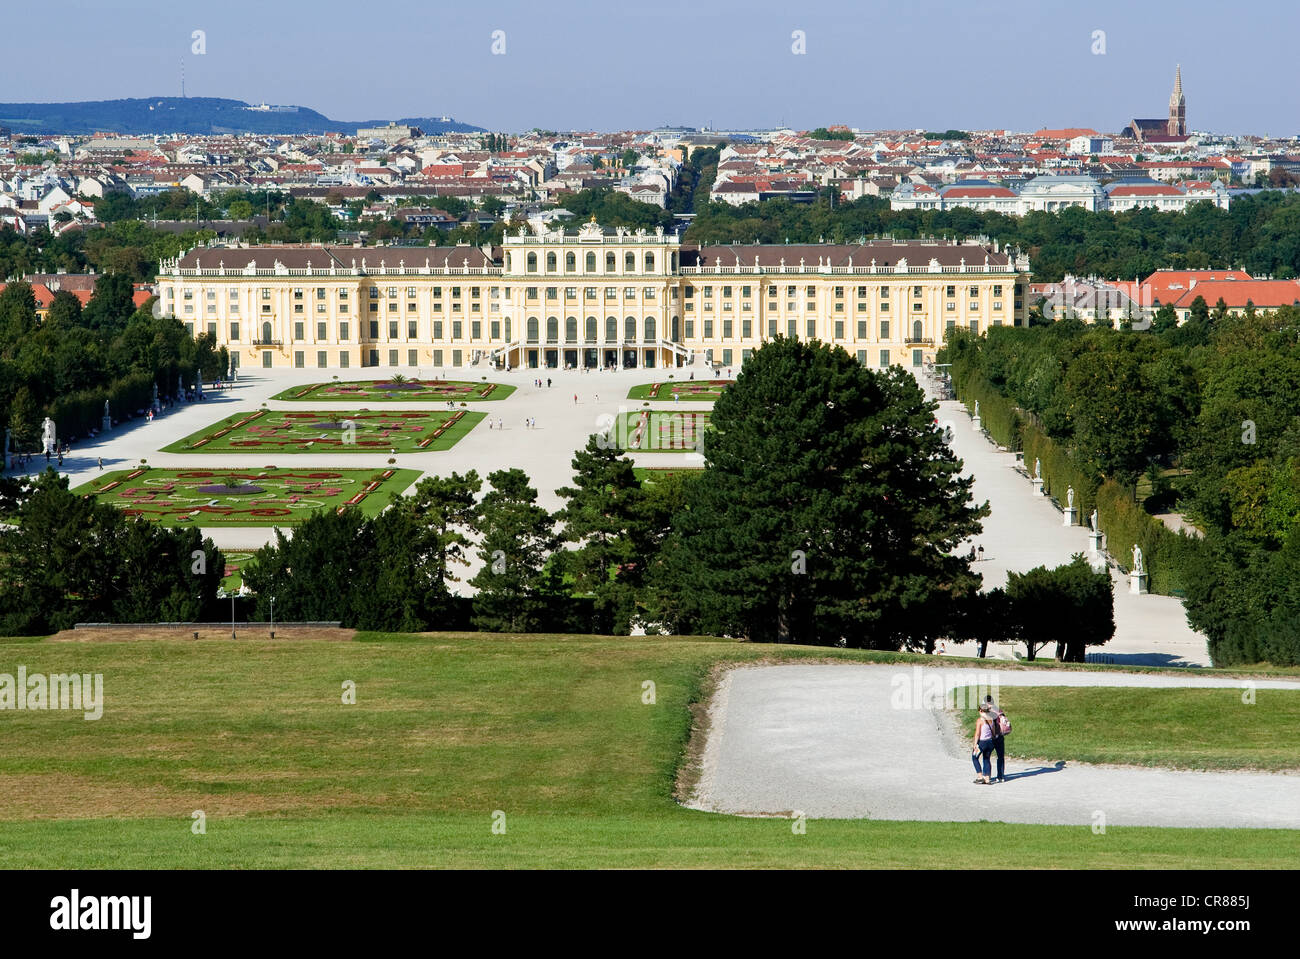 Austria, Vienna, centro storico Patrimonio Mondiale UNESCO, Schonbrunn park e castello Foto Stock